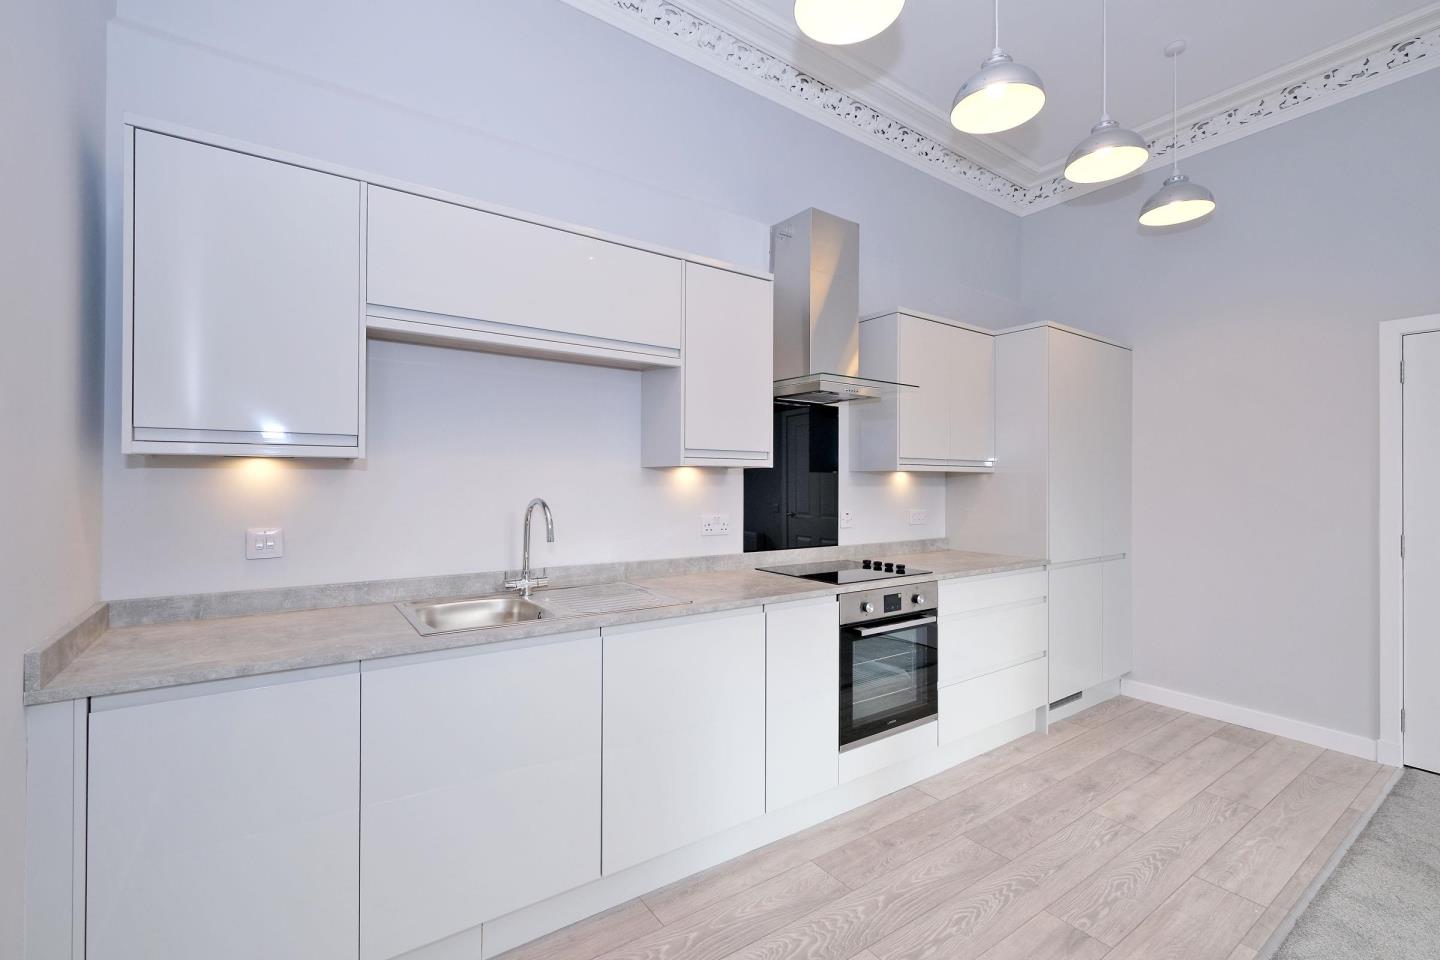 Kitchen of modern flat in Aberdeen centre